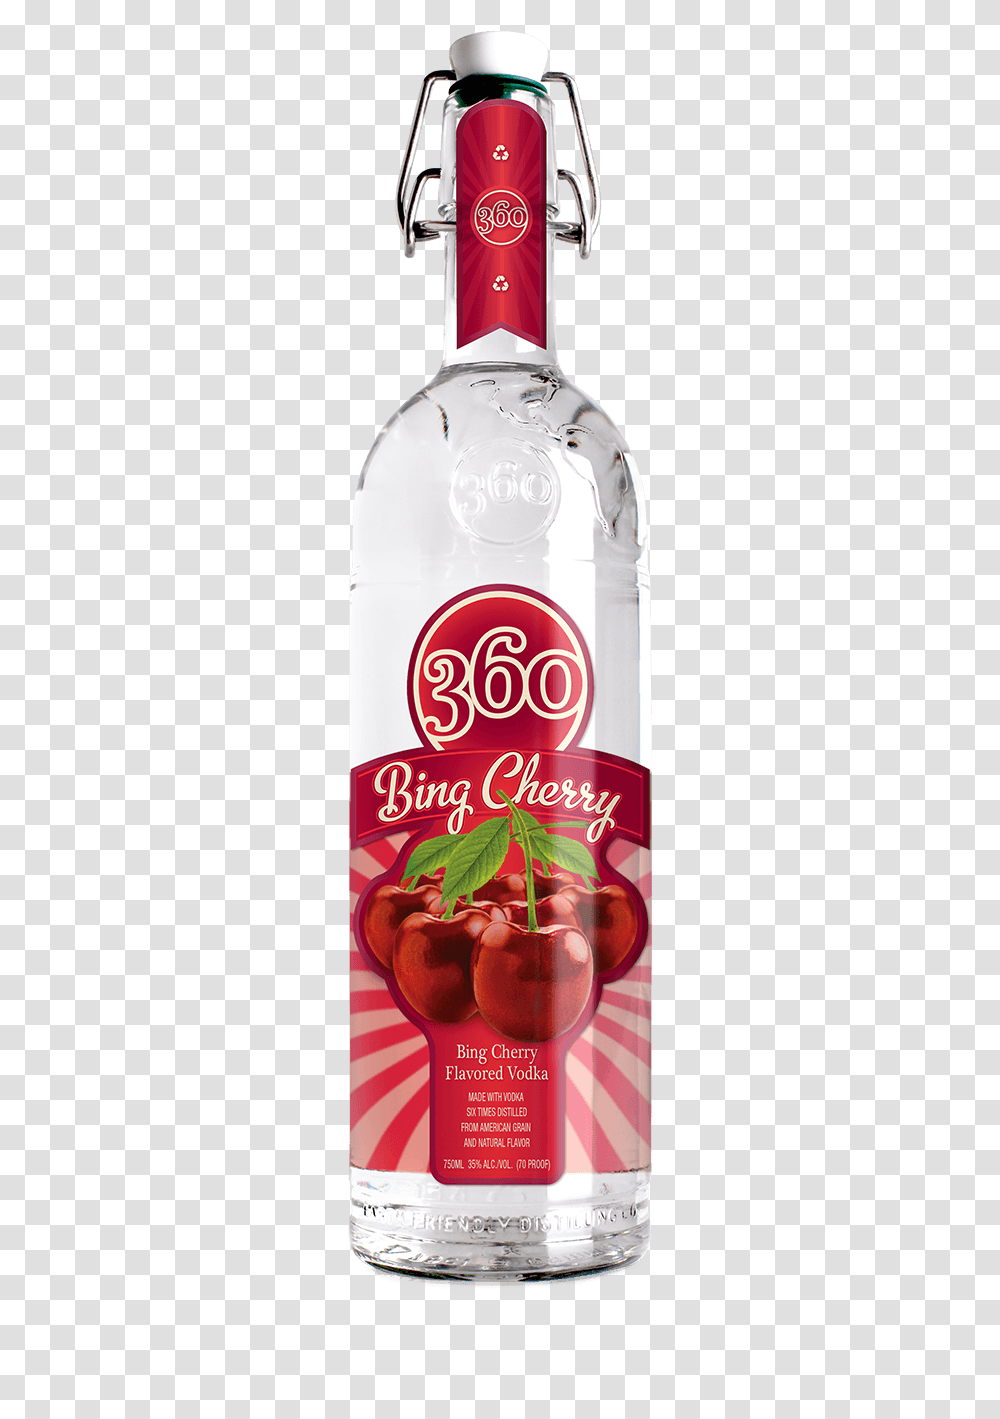 Red Delicious Apple Vodka, Beverage, Drink, Bottle, Label Transparent Png